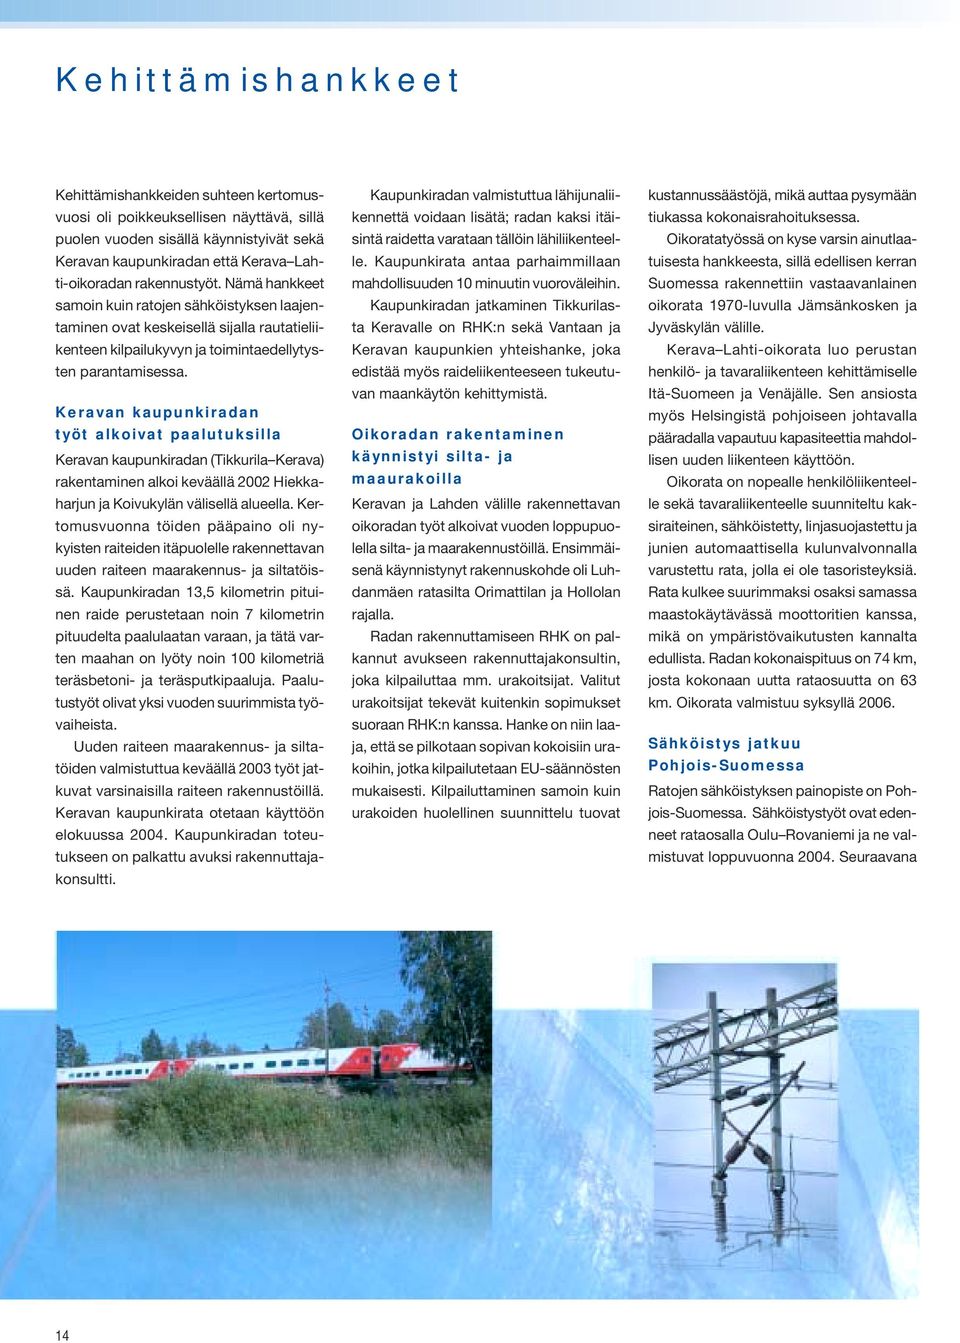 Keravan kaupunkiradan työt alkoivat paalutuksilla Keravan kaupunkiradan (Tikkurila Kerava) rakentaminen alkoi keväällä 2002 Hiekkaharjun ja Koivukylän välisellä alueella.